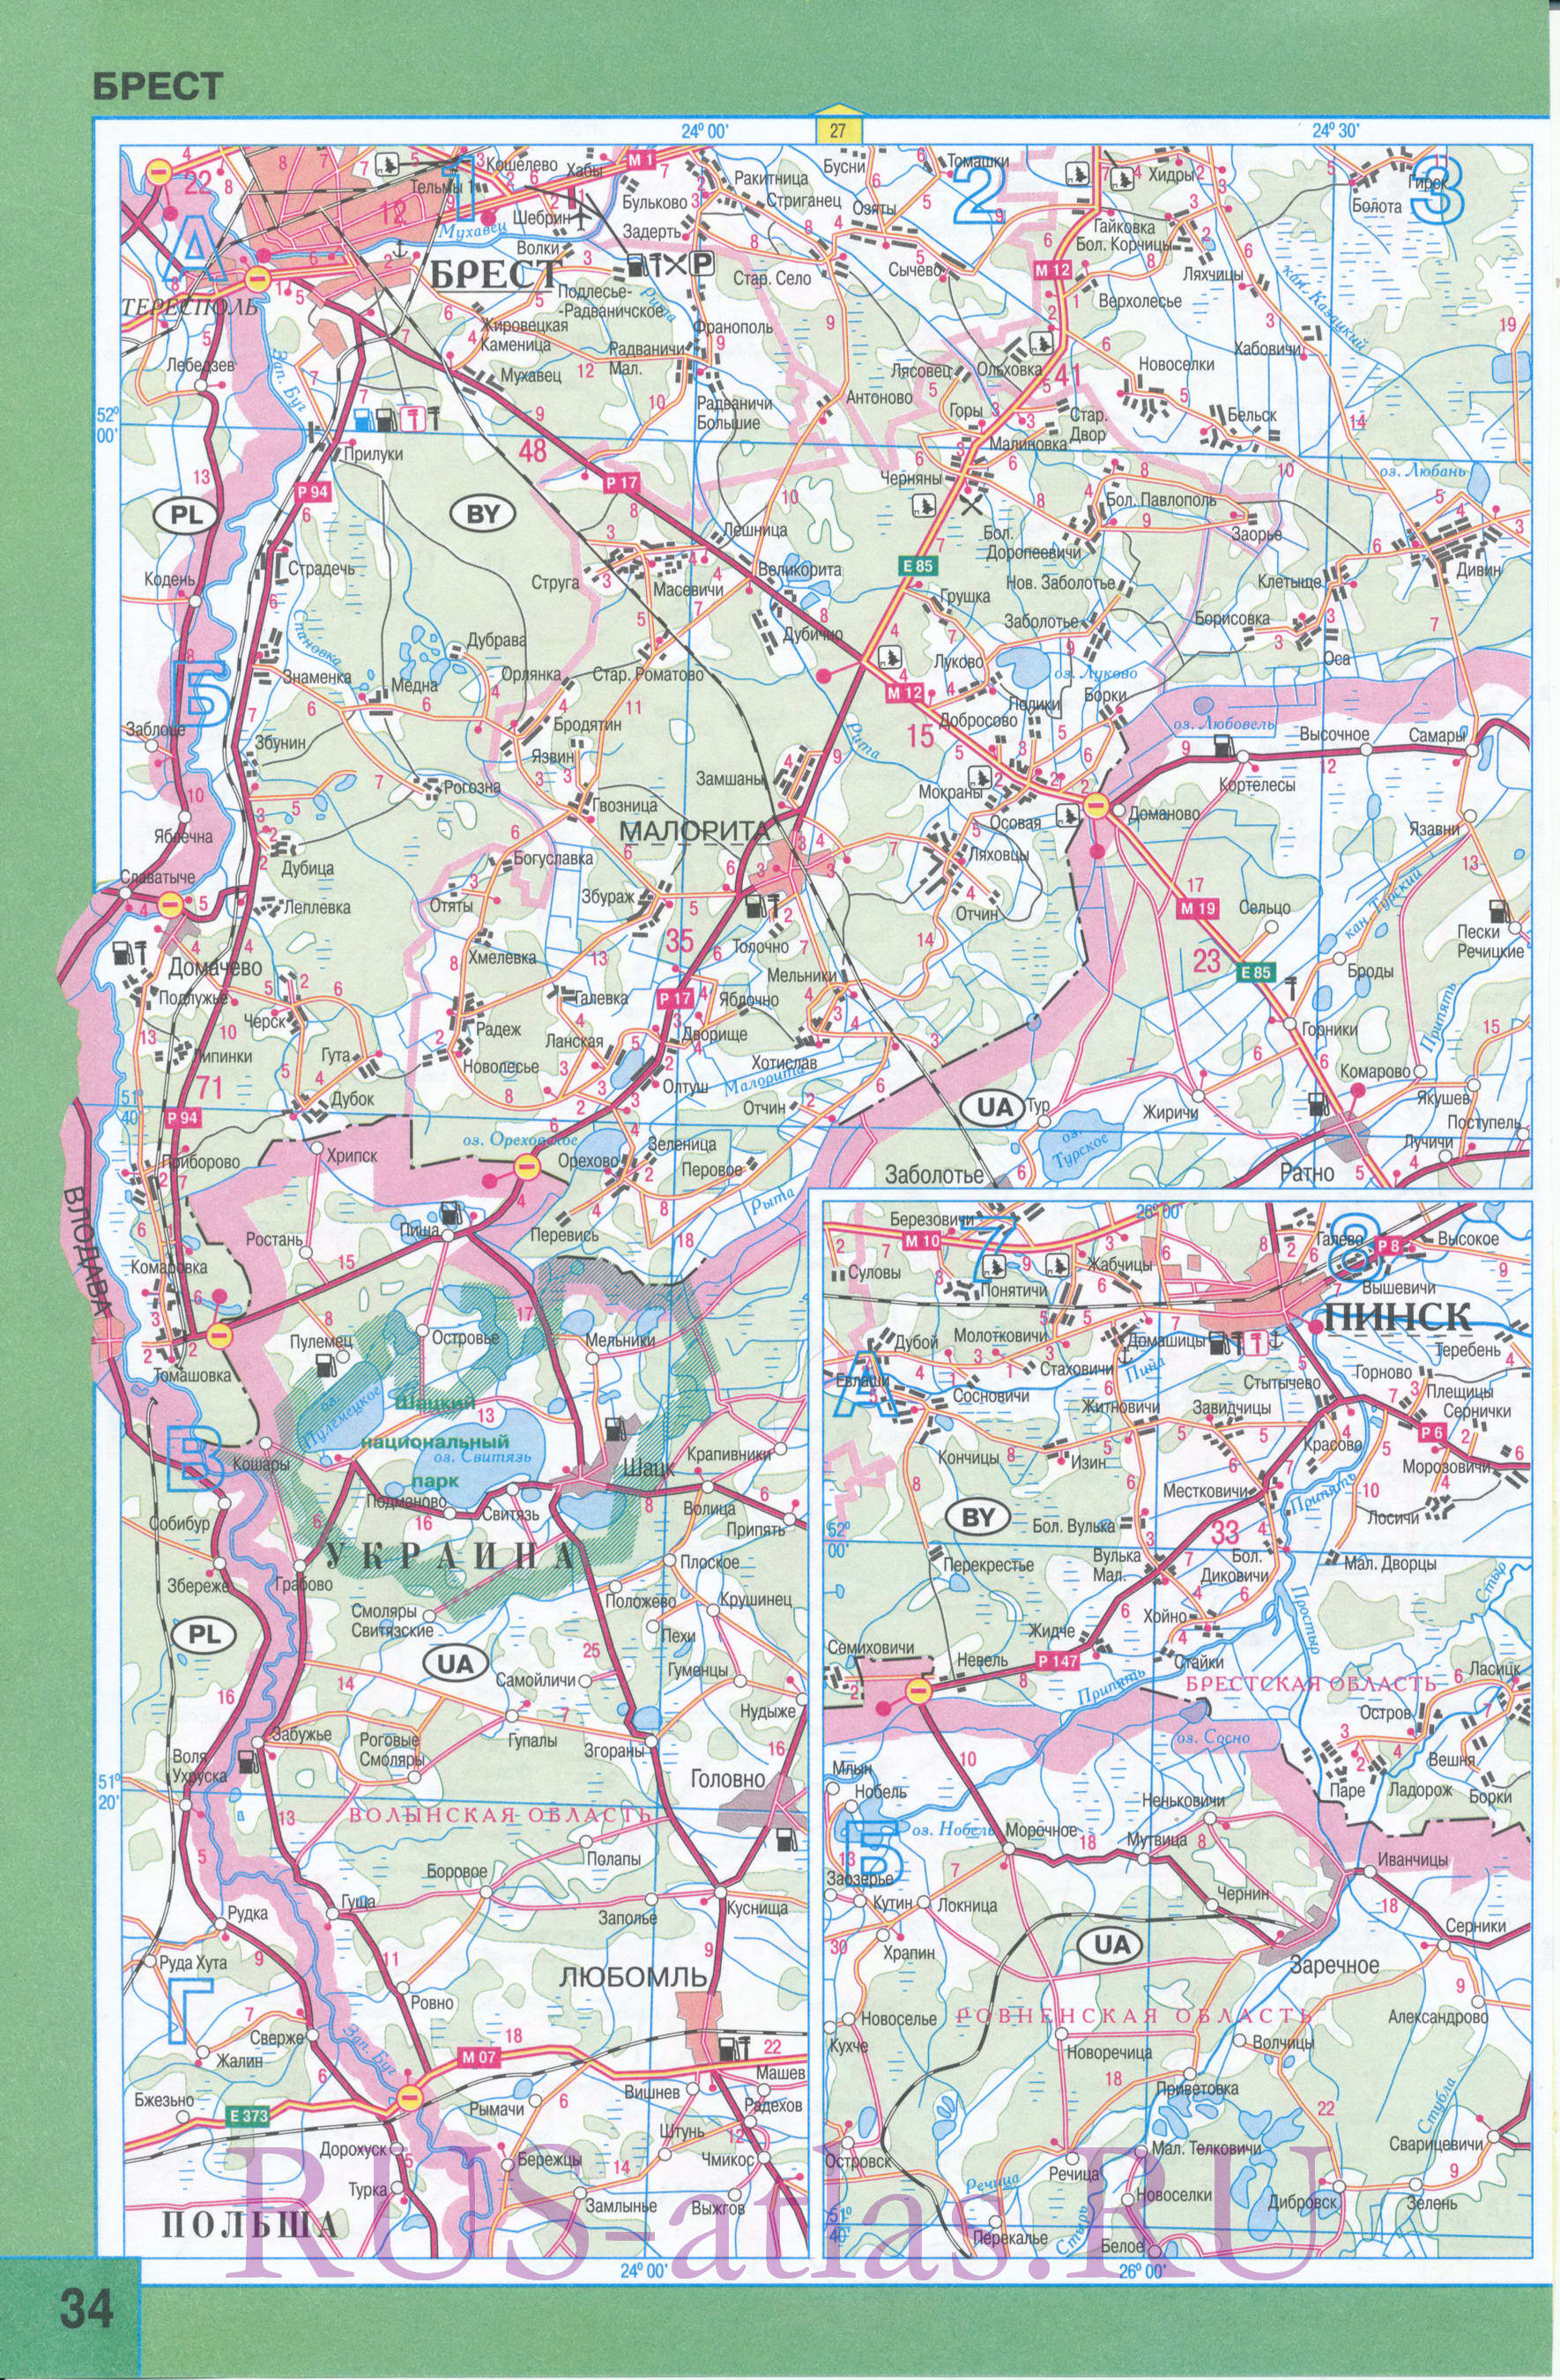 Карта Брестской области. Подробная карта Брестской области с городами и дорогами. Площадь Брестской обл 32800 кв км, население 1433100 человек, A1 - 